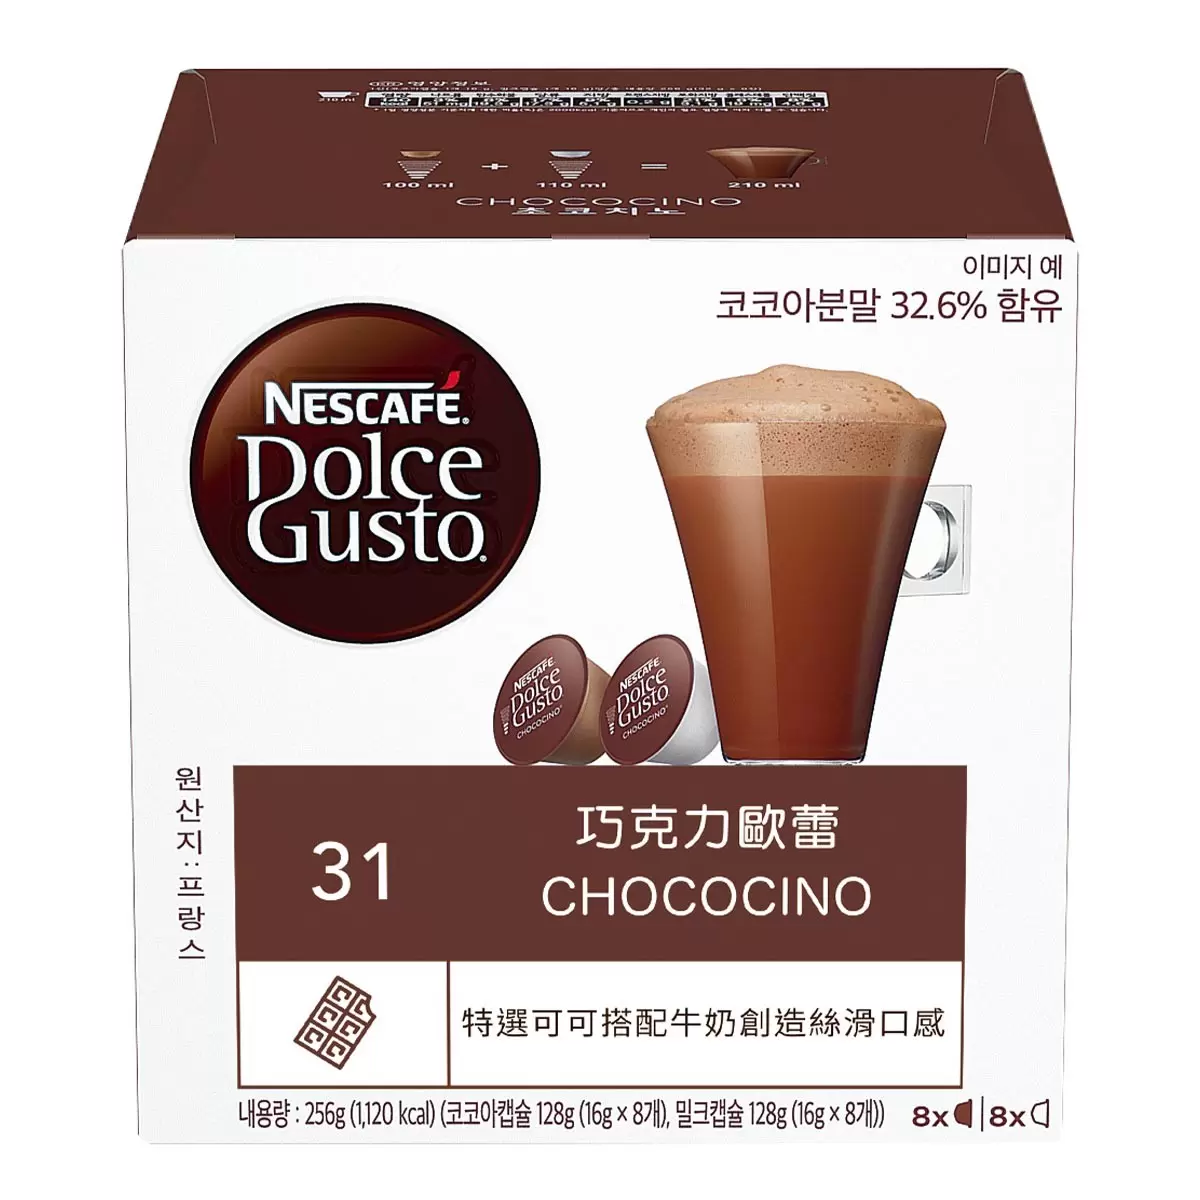 雀巢多趣酷思 巧克力歐蕾膠囊組 96顆 適用NESCAFE Dolce Gusto機器